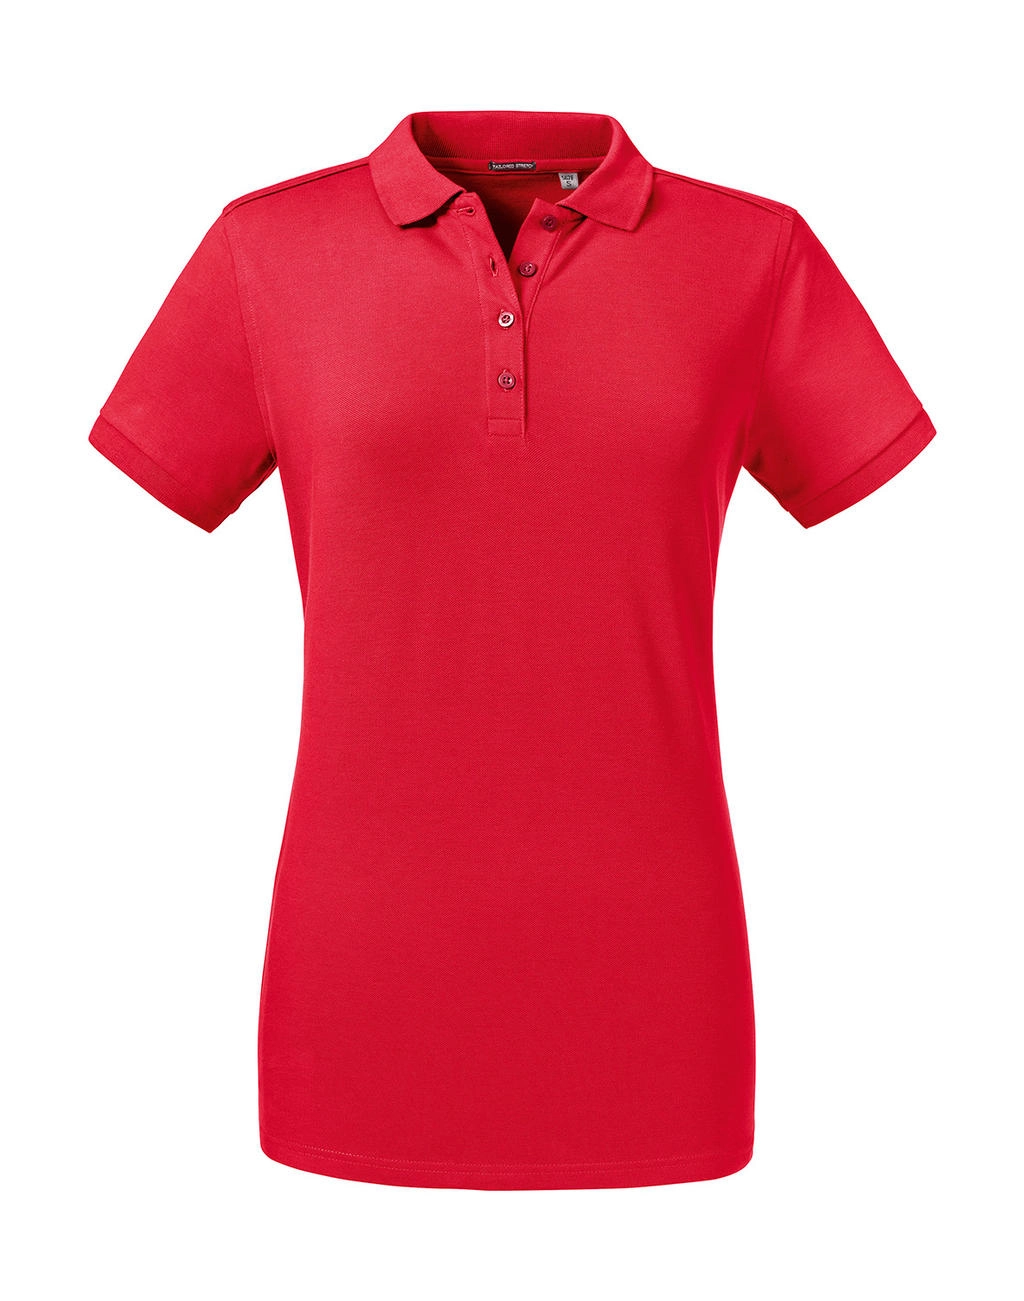 Ladies` Tailored Stretch Polo zum Besticken und Bedrucken in der Farbe Classic Red mit Ihren Logo, Schriftzug oder Motiv.